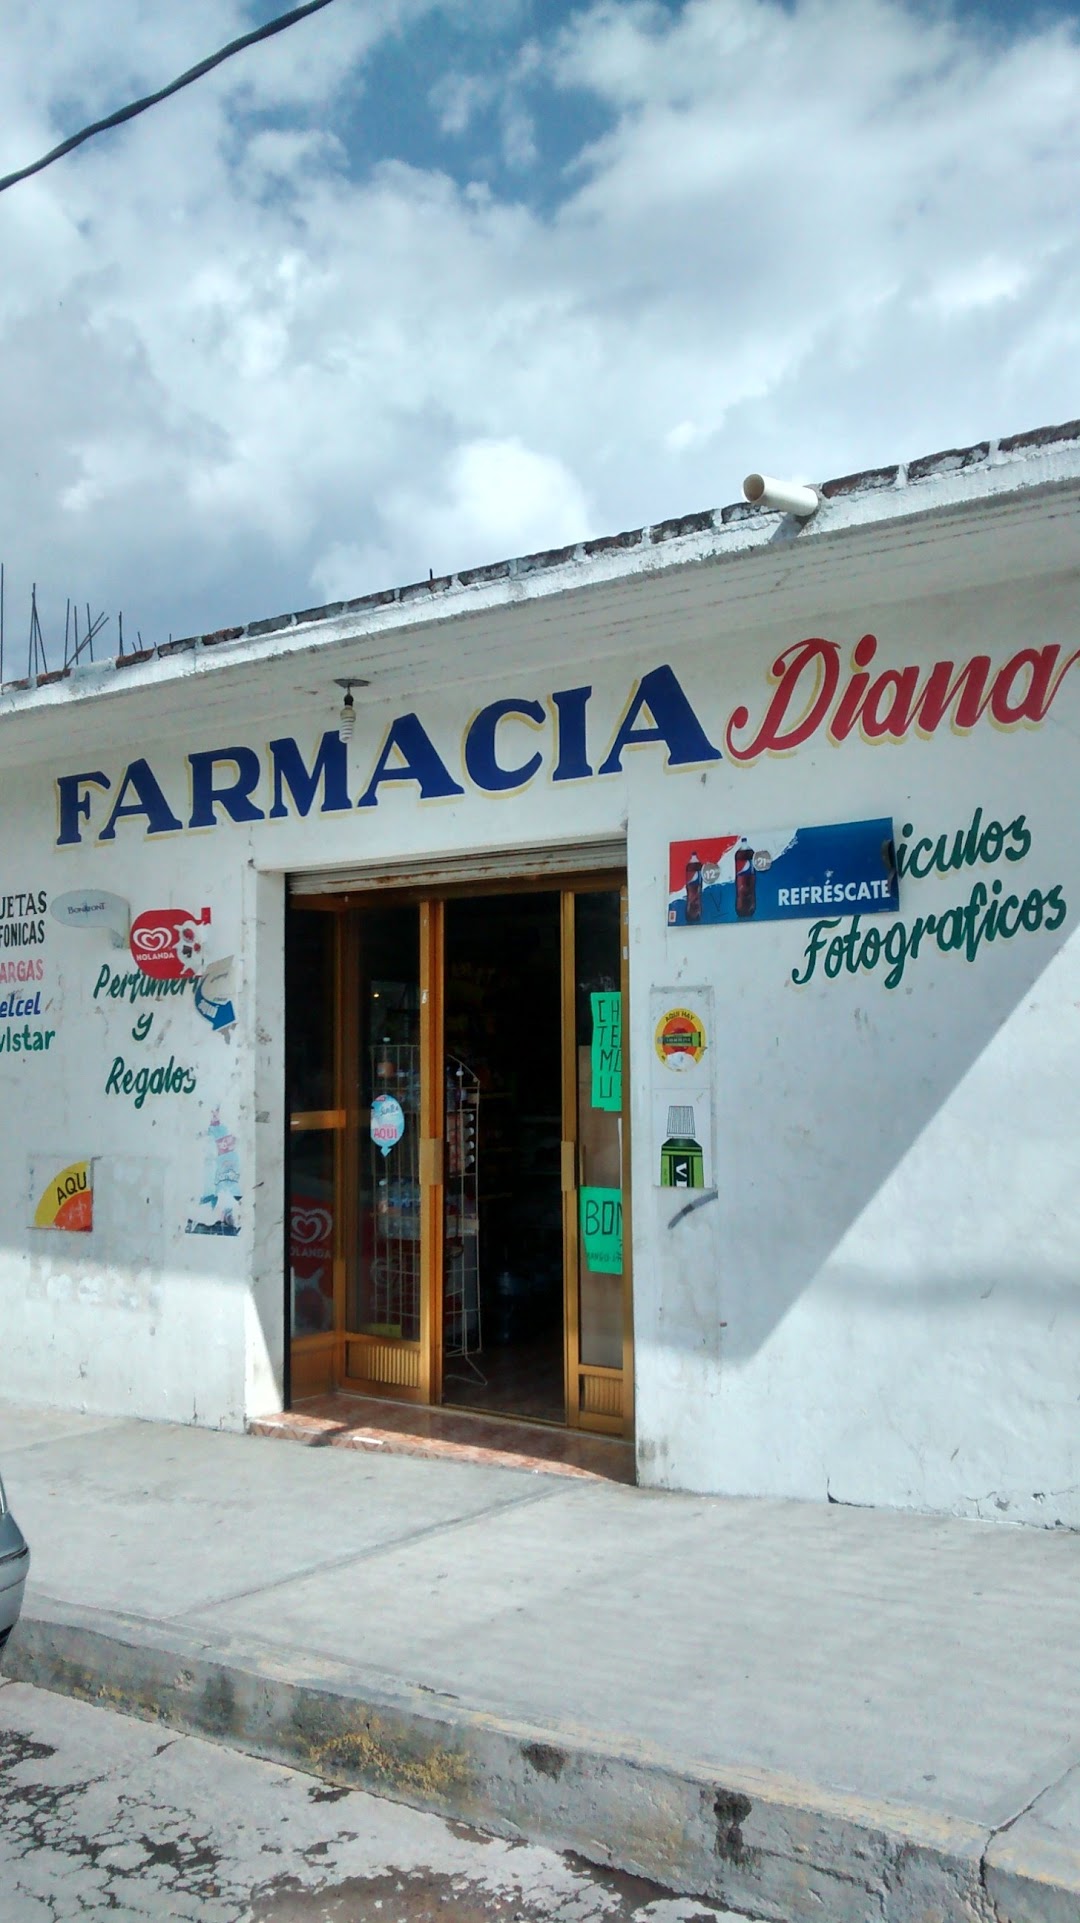 Farmacia Diana